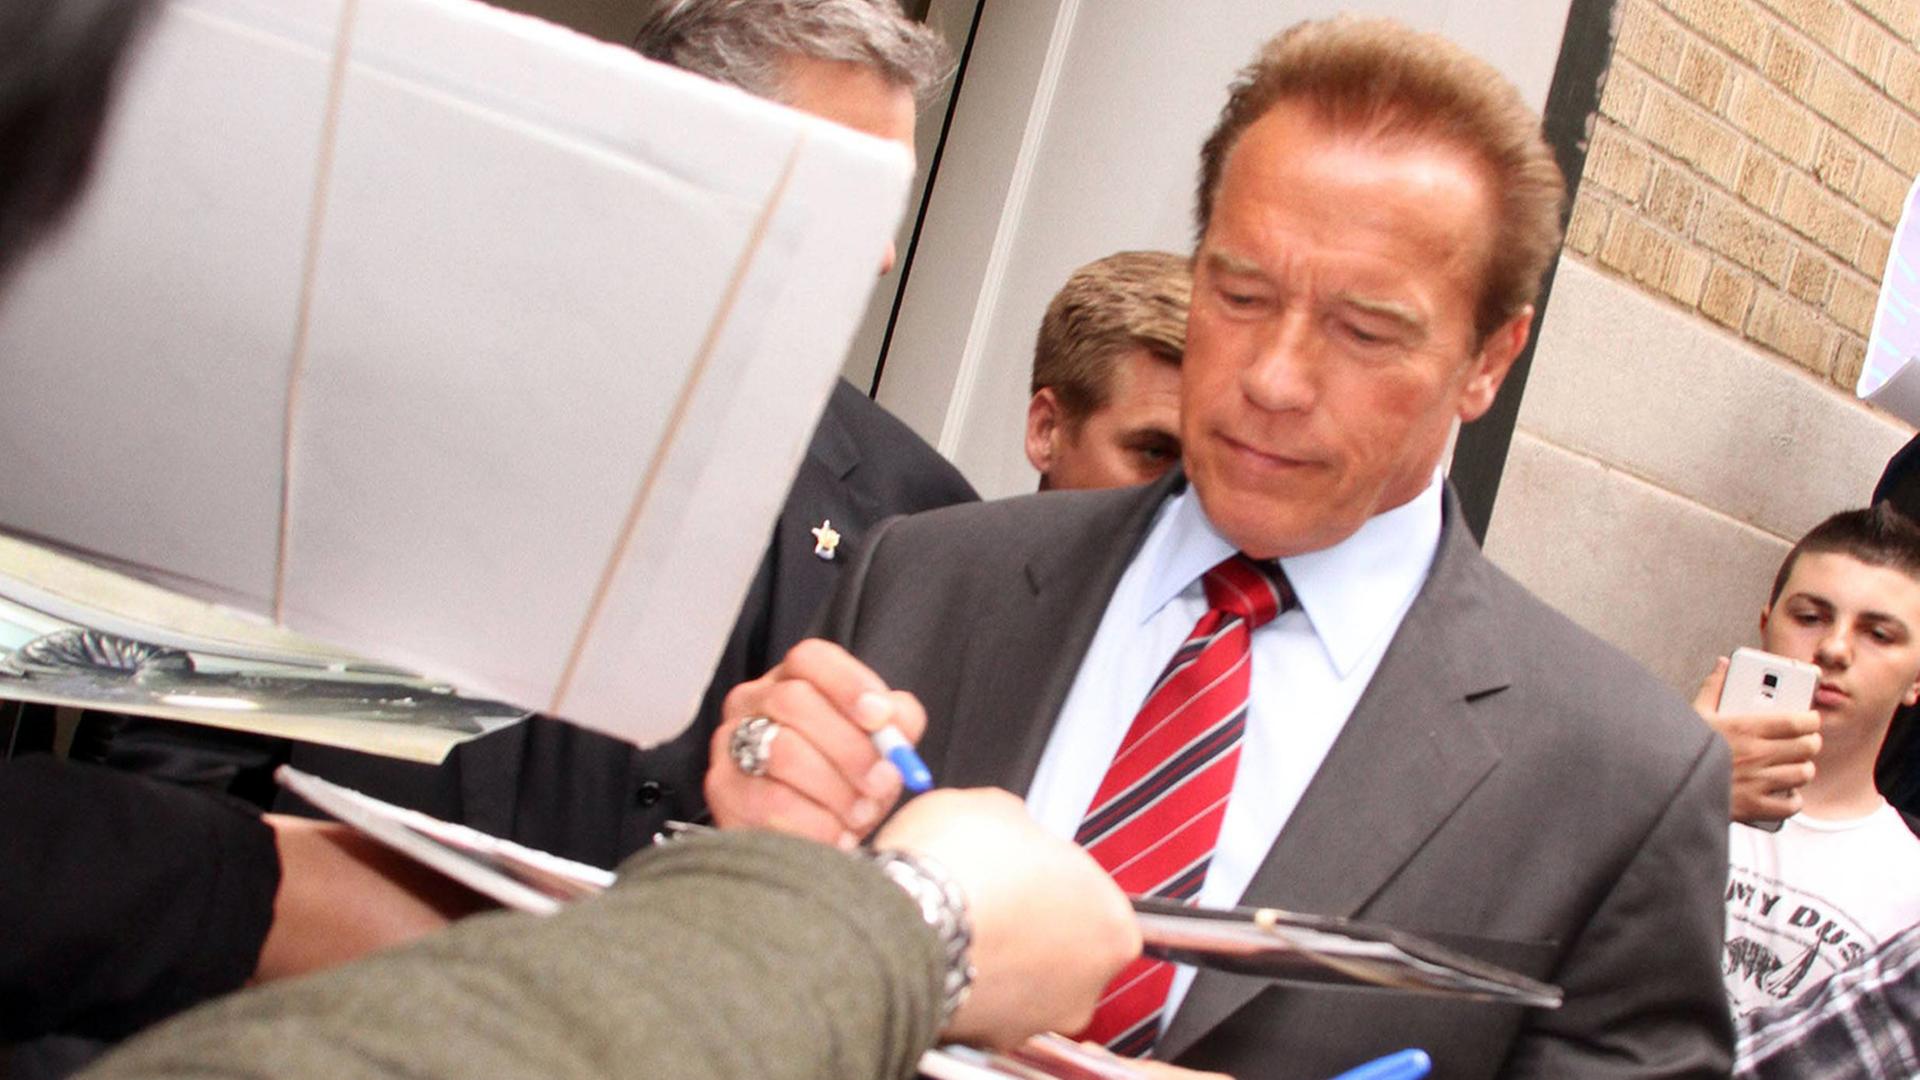 Schauspieler Arnold Schwarzenegger gibt Autogramme bei einer Werbeveranstaltung für seinen neuen Film "Maggie" (aufgenommen 2015)